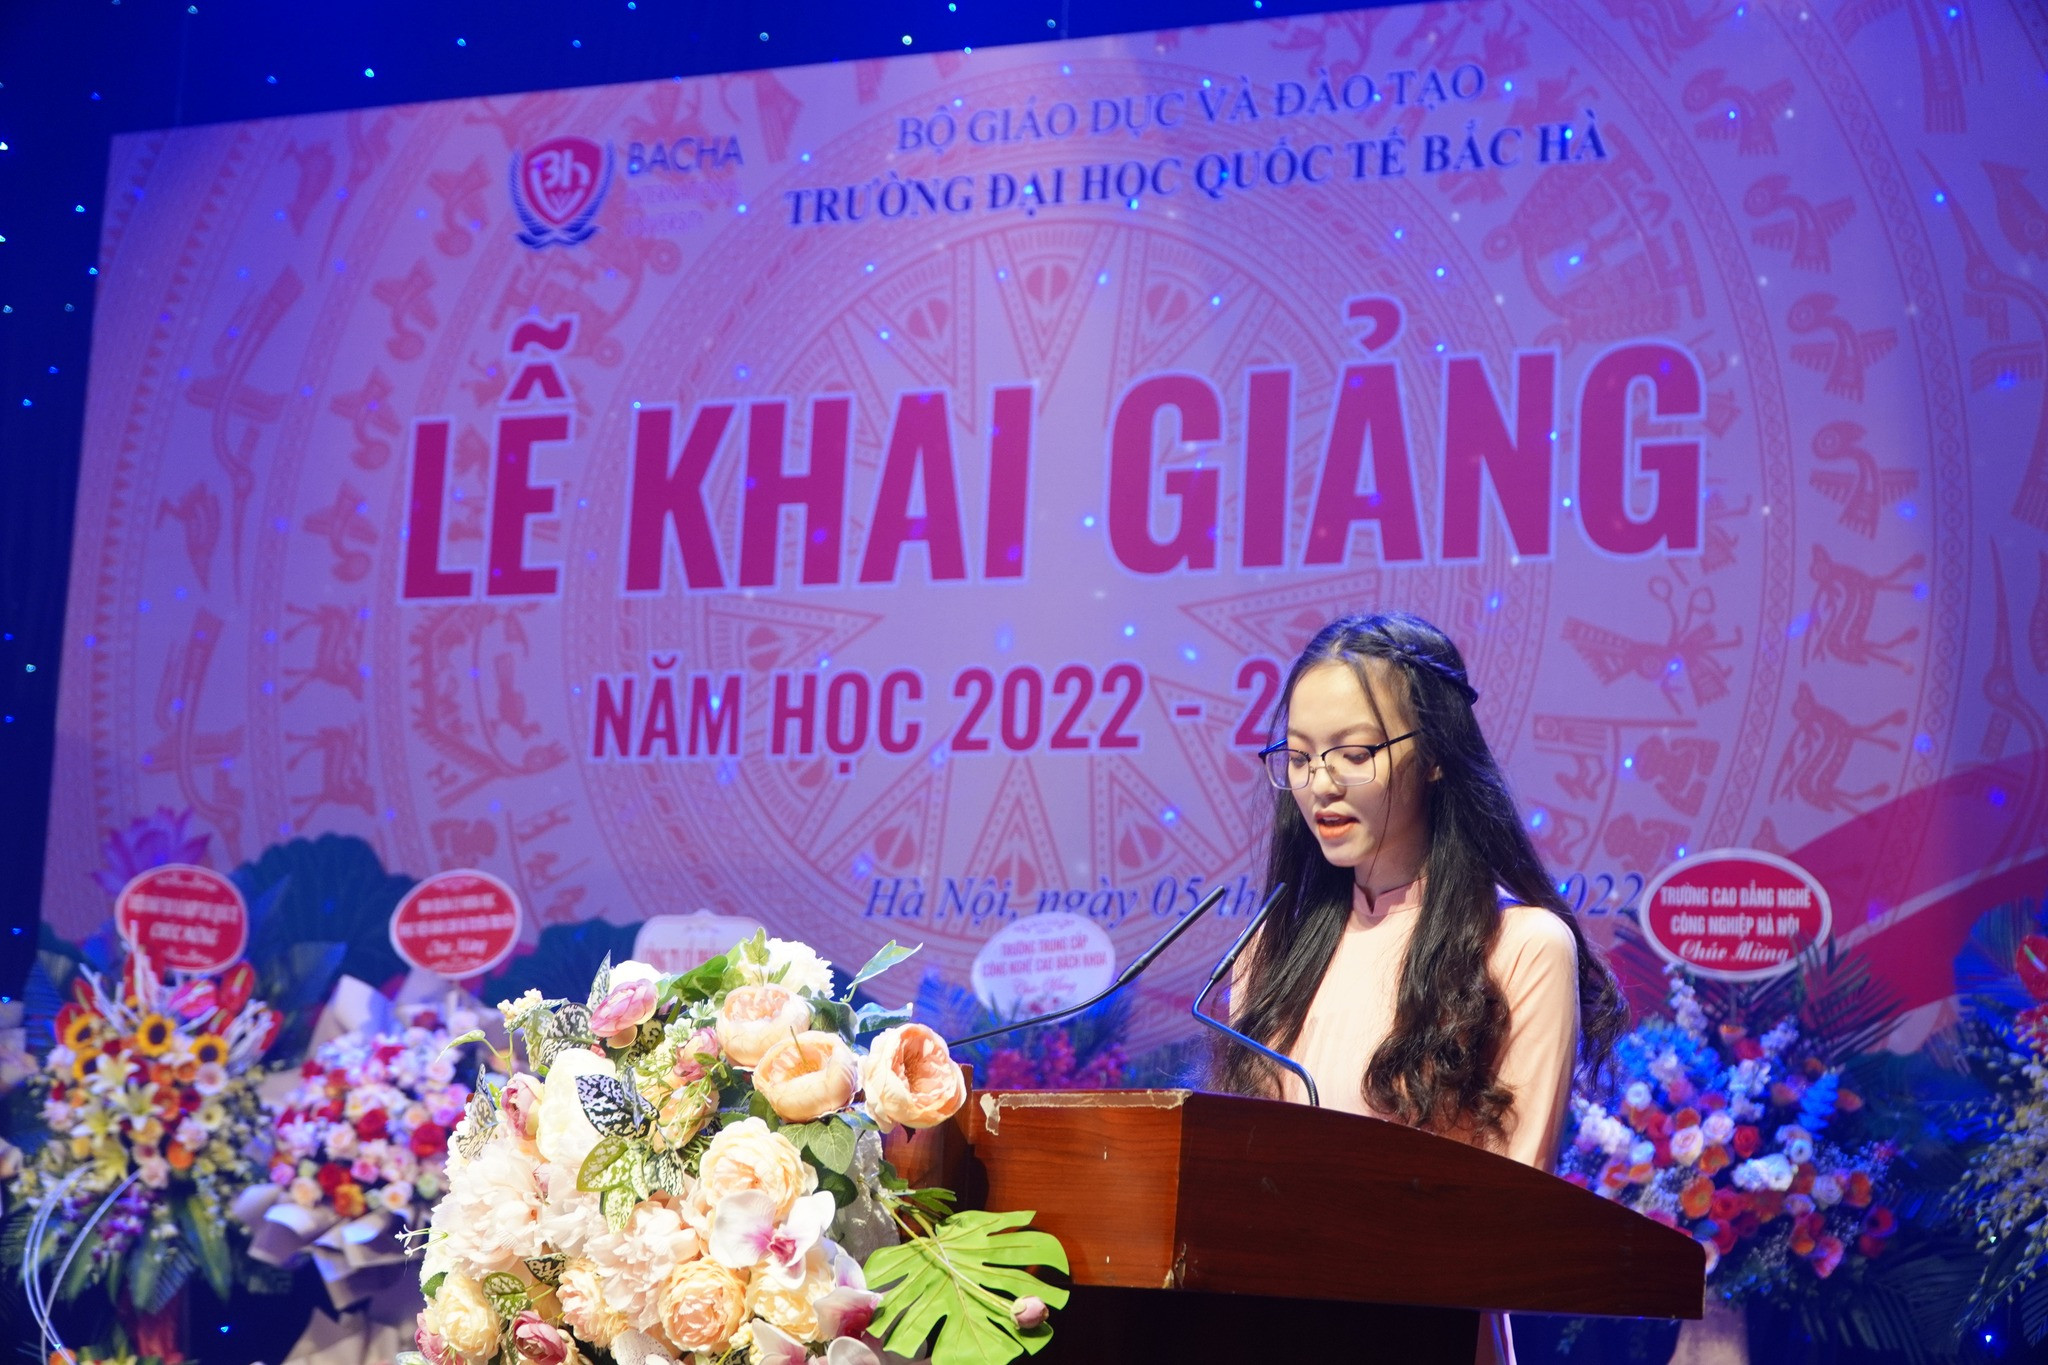 Cao Hoàng Yến Khanh phát biểu trong l?khai giảng năm học 2022 - 2023